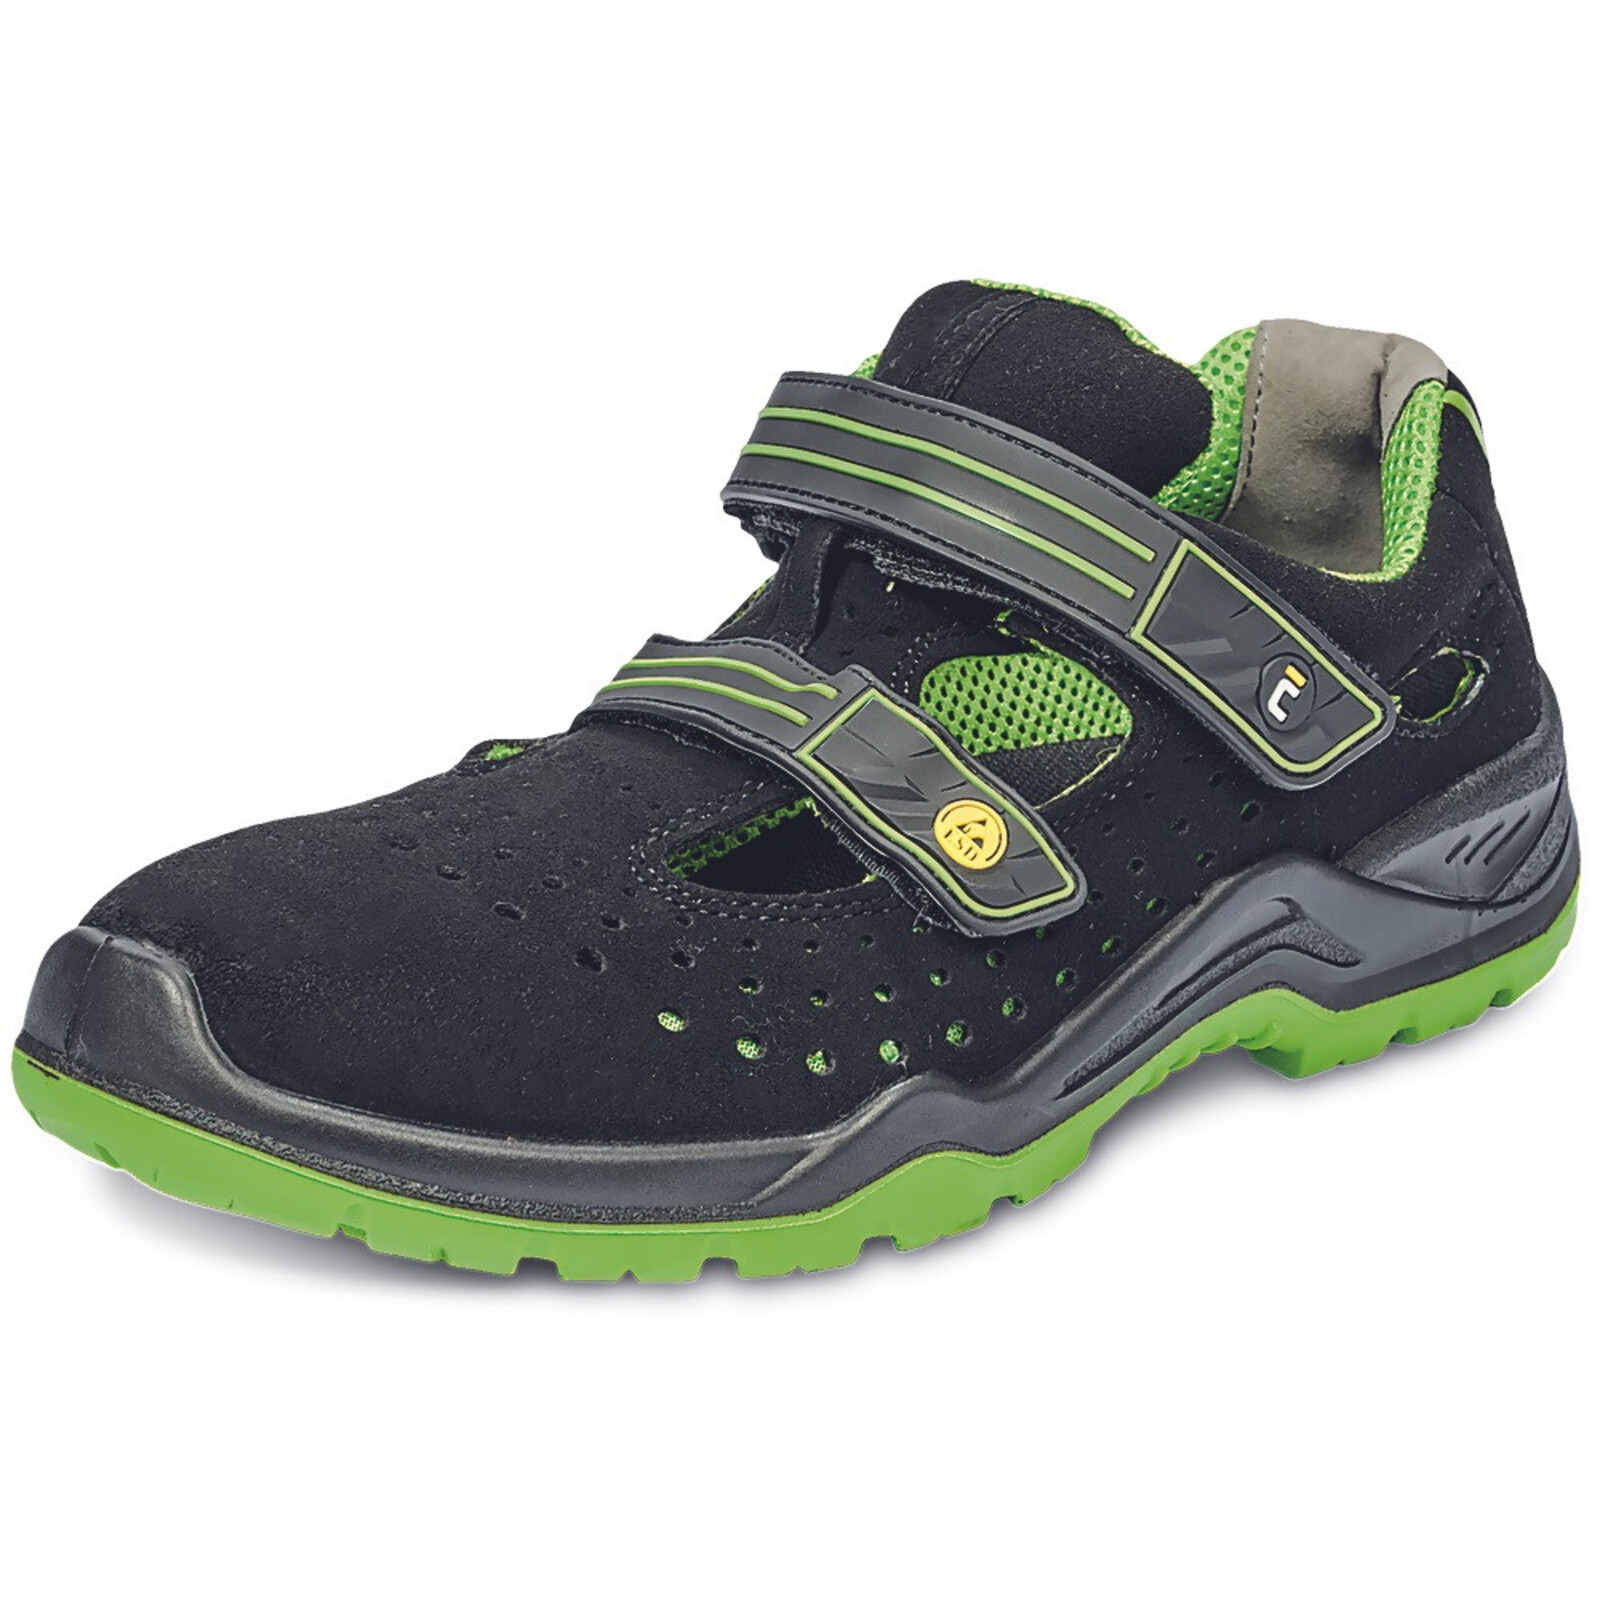 Bezpečnostné sandále Cerva Halwill MF ESD S1P SRC - veľkosť: 41, farba: čierna/zelená